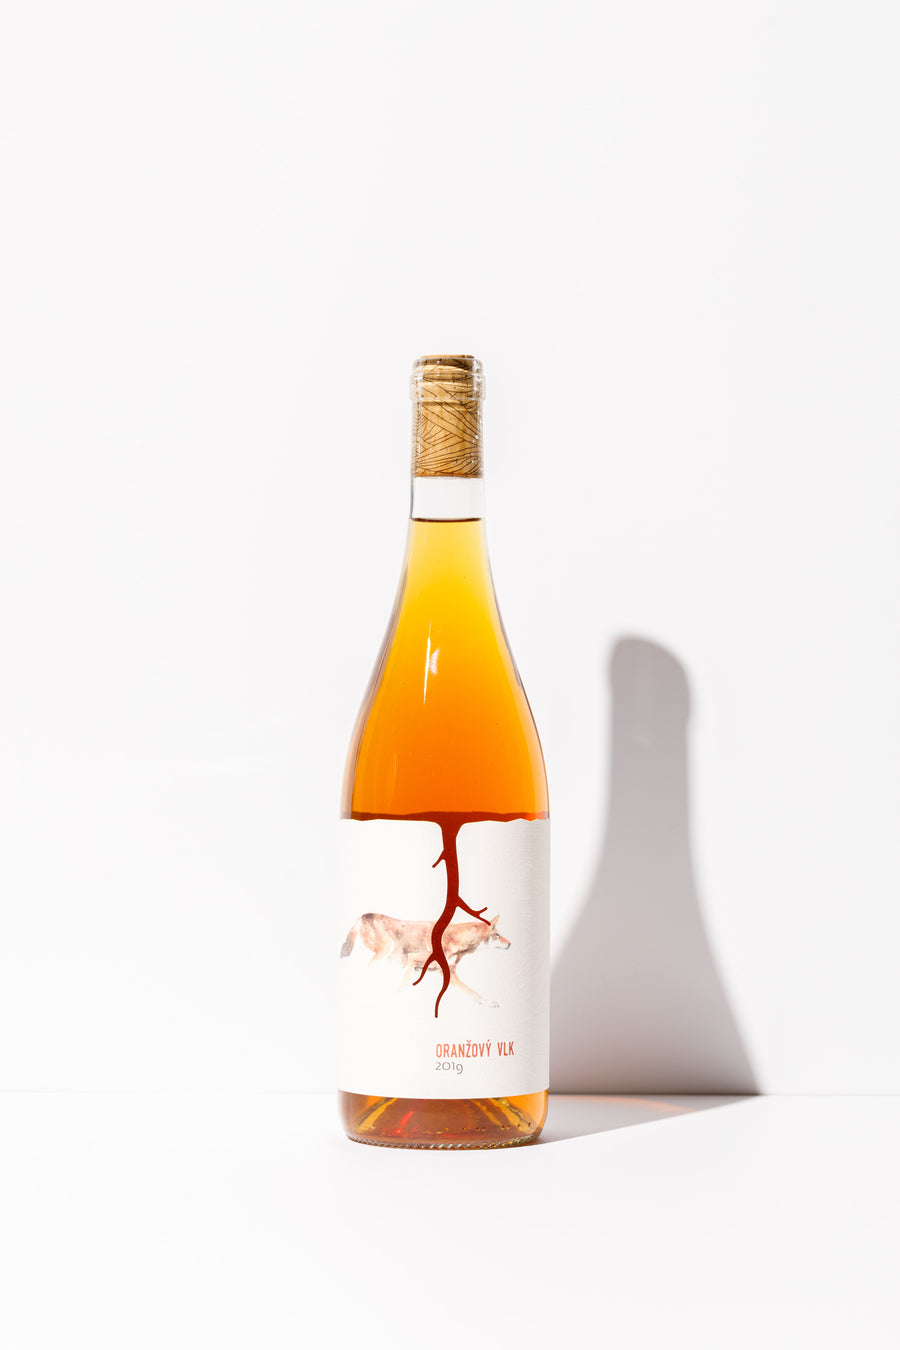 Oranzovy, Vino Magula